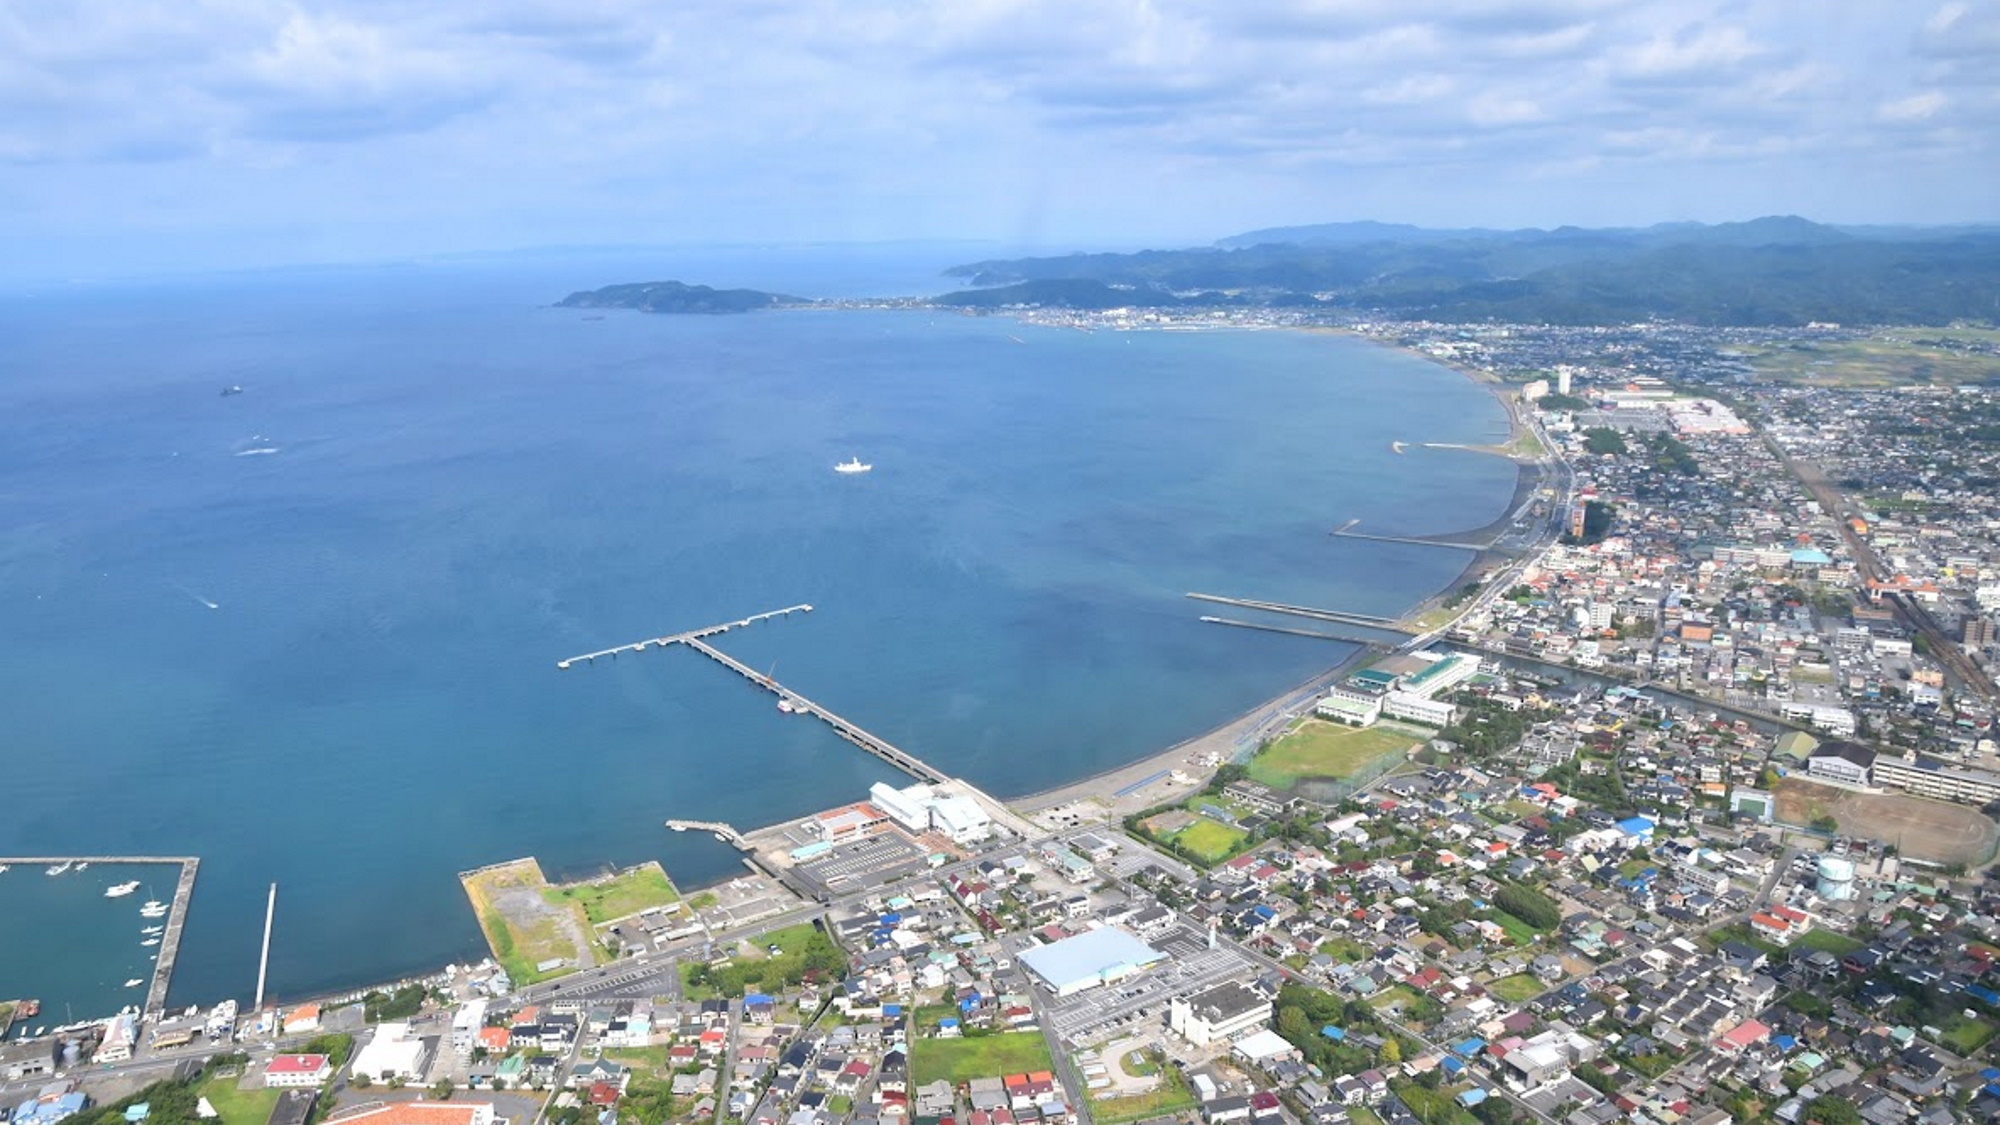 【上空写真】「館山湾」は穏やかな海の為、別名「鏡ヶ浦」と呼ばれている。